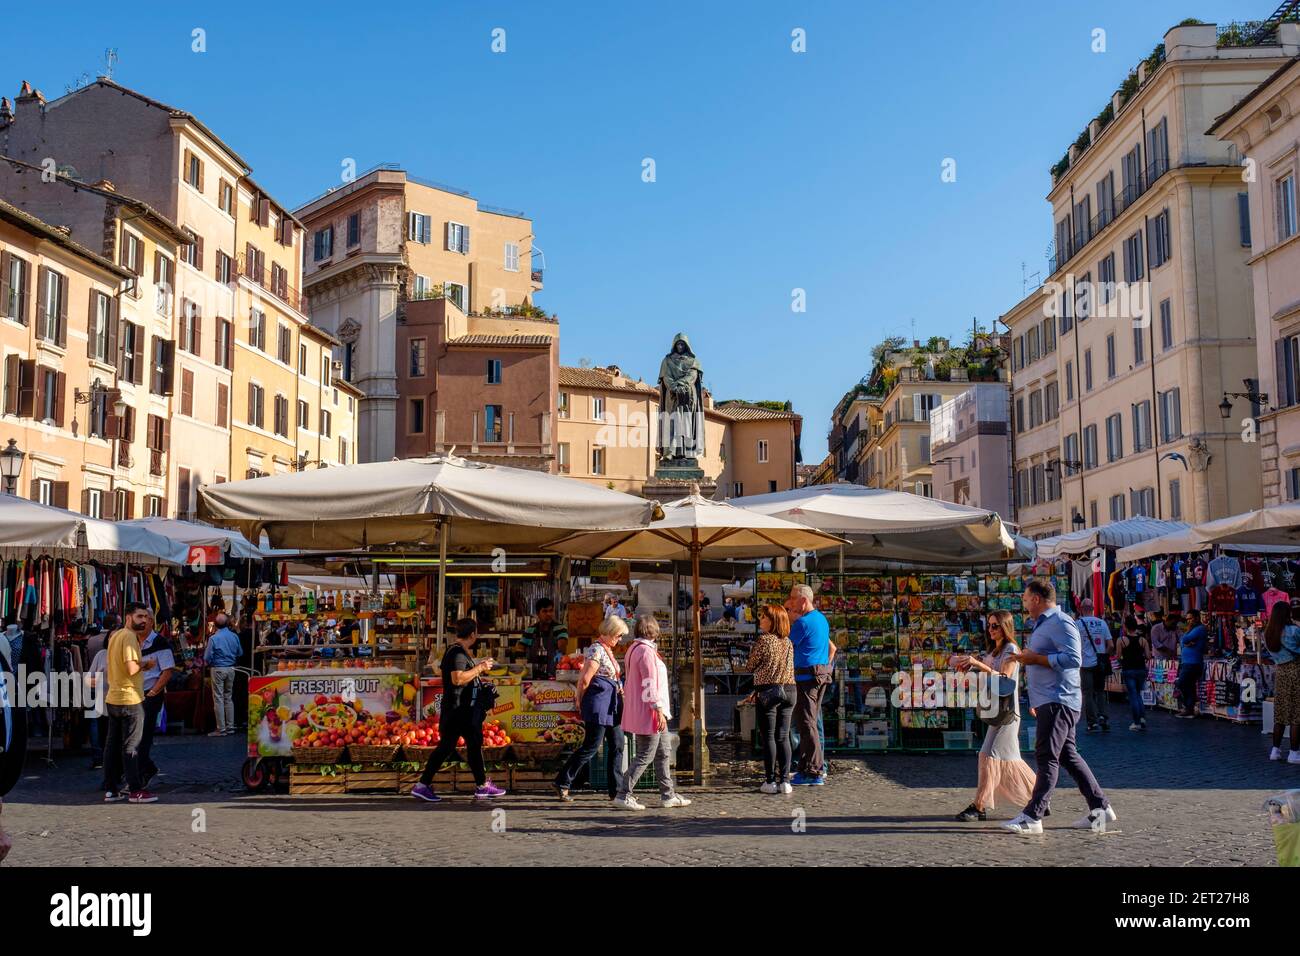 Food vendors, vendor stalls at Campo de' Fiori Market, Campo de Fiori Square, Rome, Italy Stock Photo